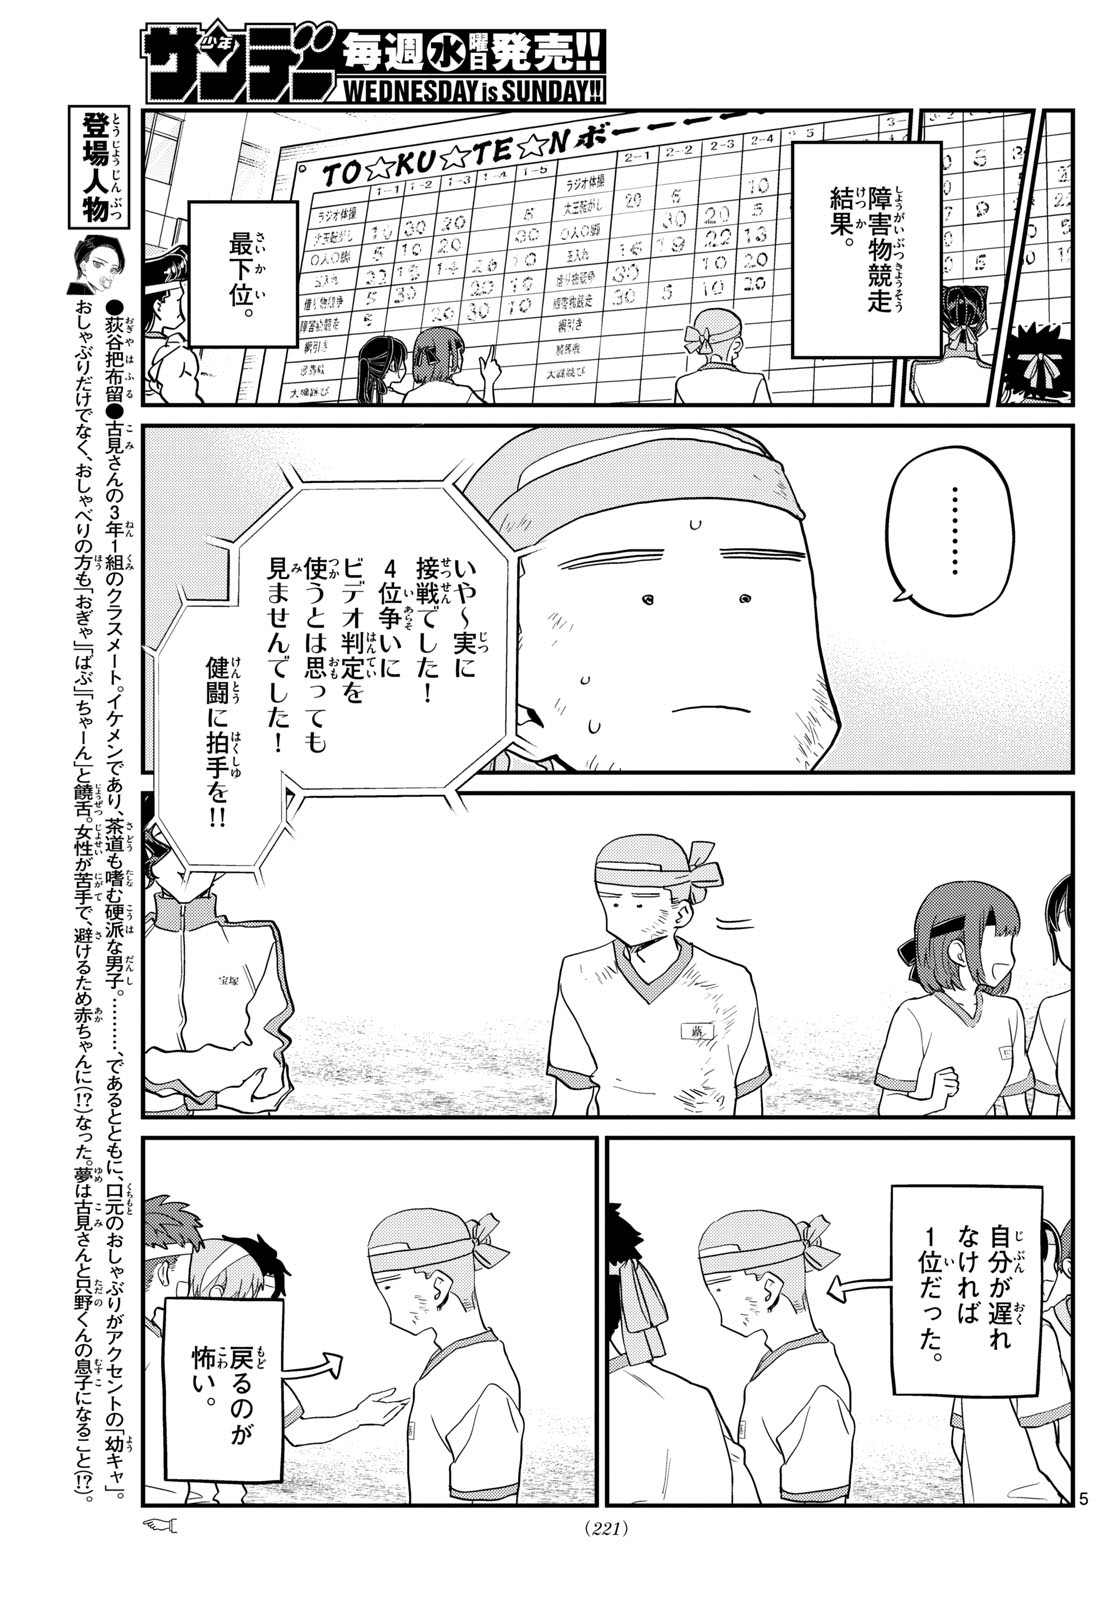 Read Komi-san wa Komyushou Desu 430 - Oni Scan